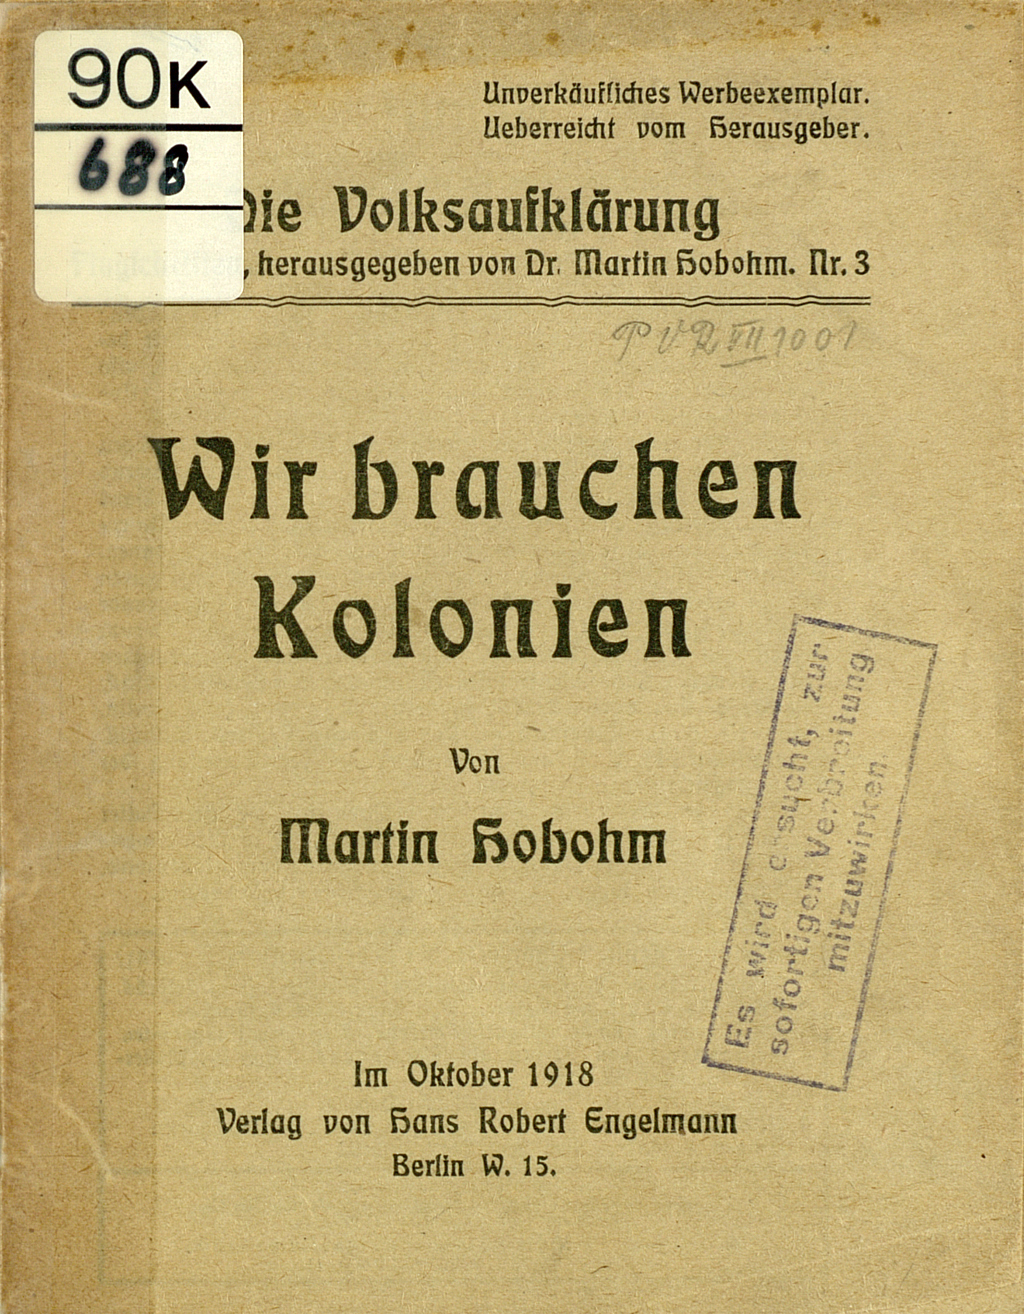 Zu sehen ist das Titelblatt einer von Dr. Martin Hobohm verfassten Druckschrift "Wir bauen Kolonien". Dieses Schriftstück wurde 1918 als Teil der Schriftenreihe "Der Volksaufklärer" publiziert. 